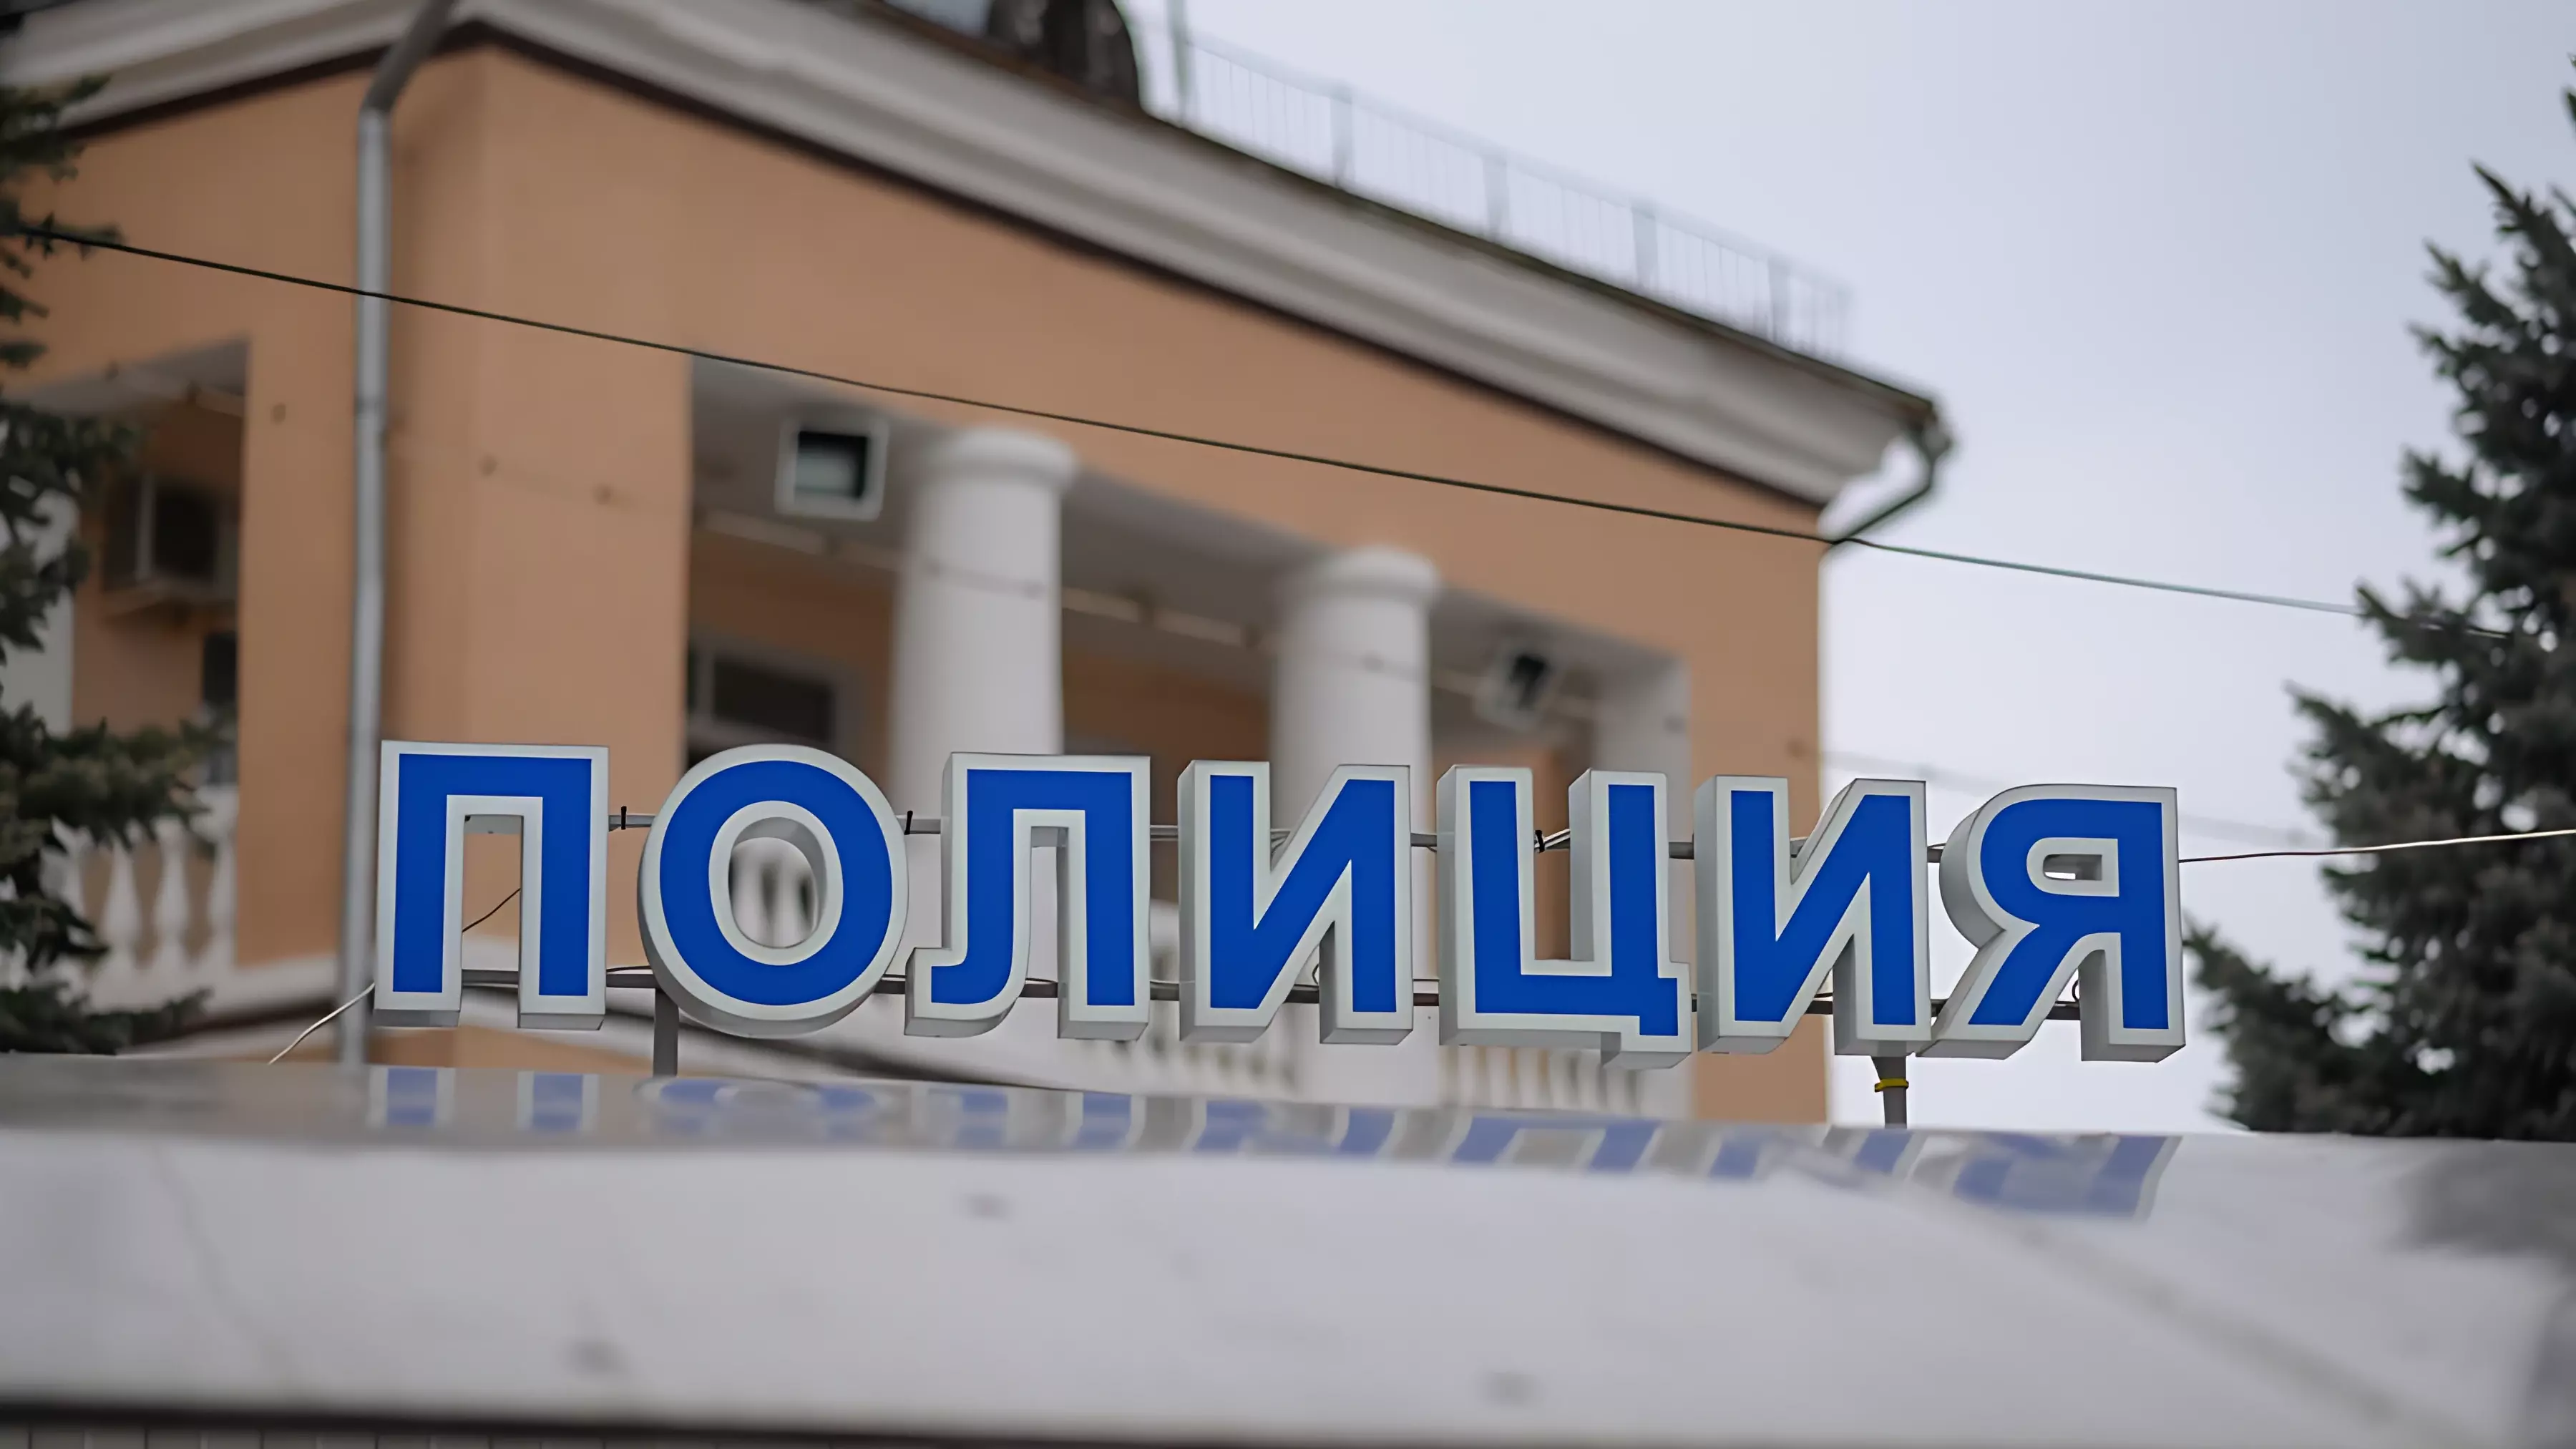 Экс-полицейские могли быть членами банды на Ставрополье, а врачи оказались в дефиците